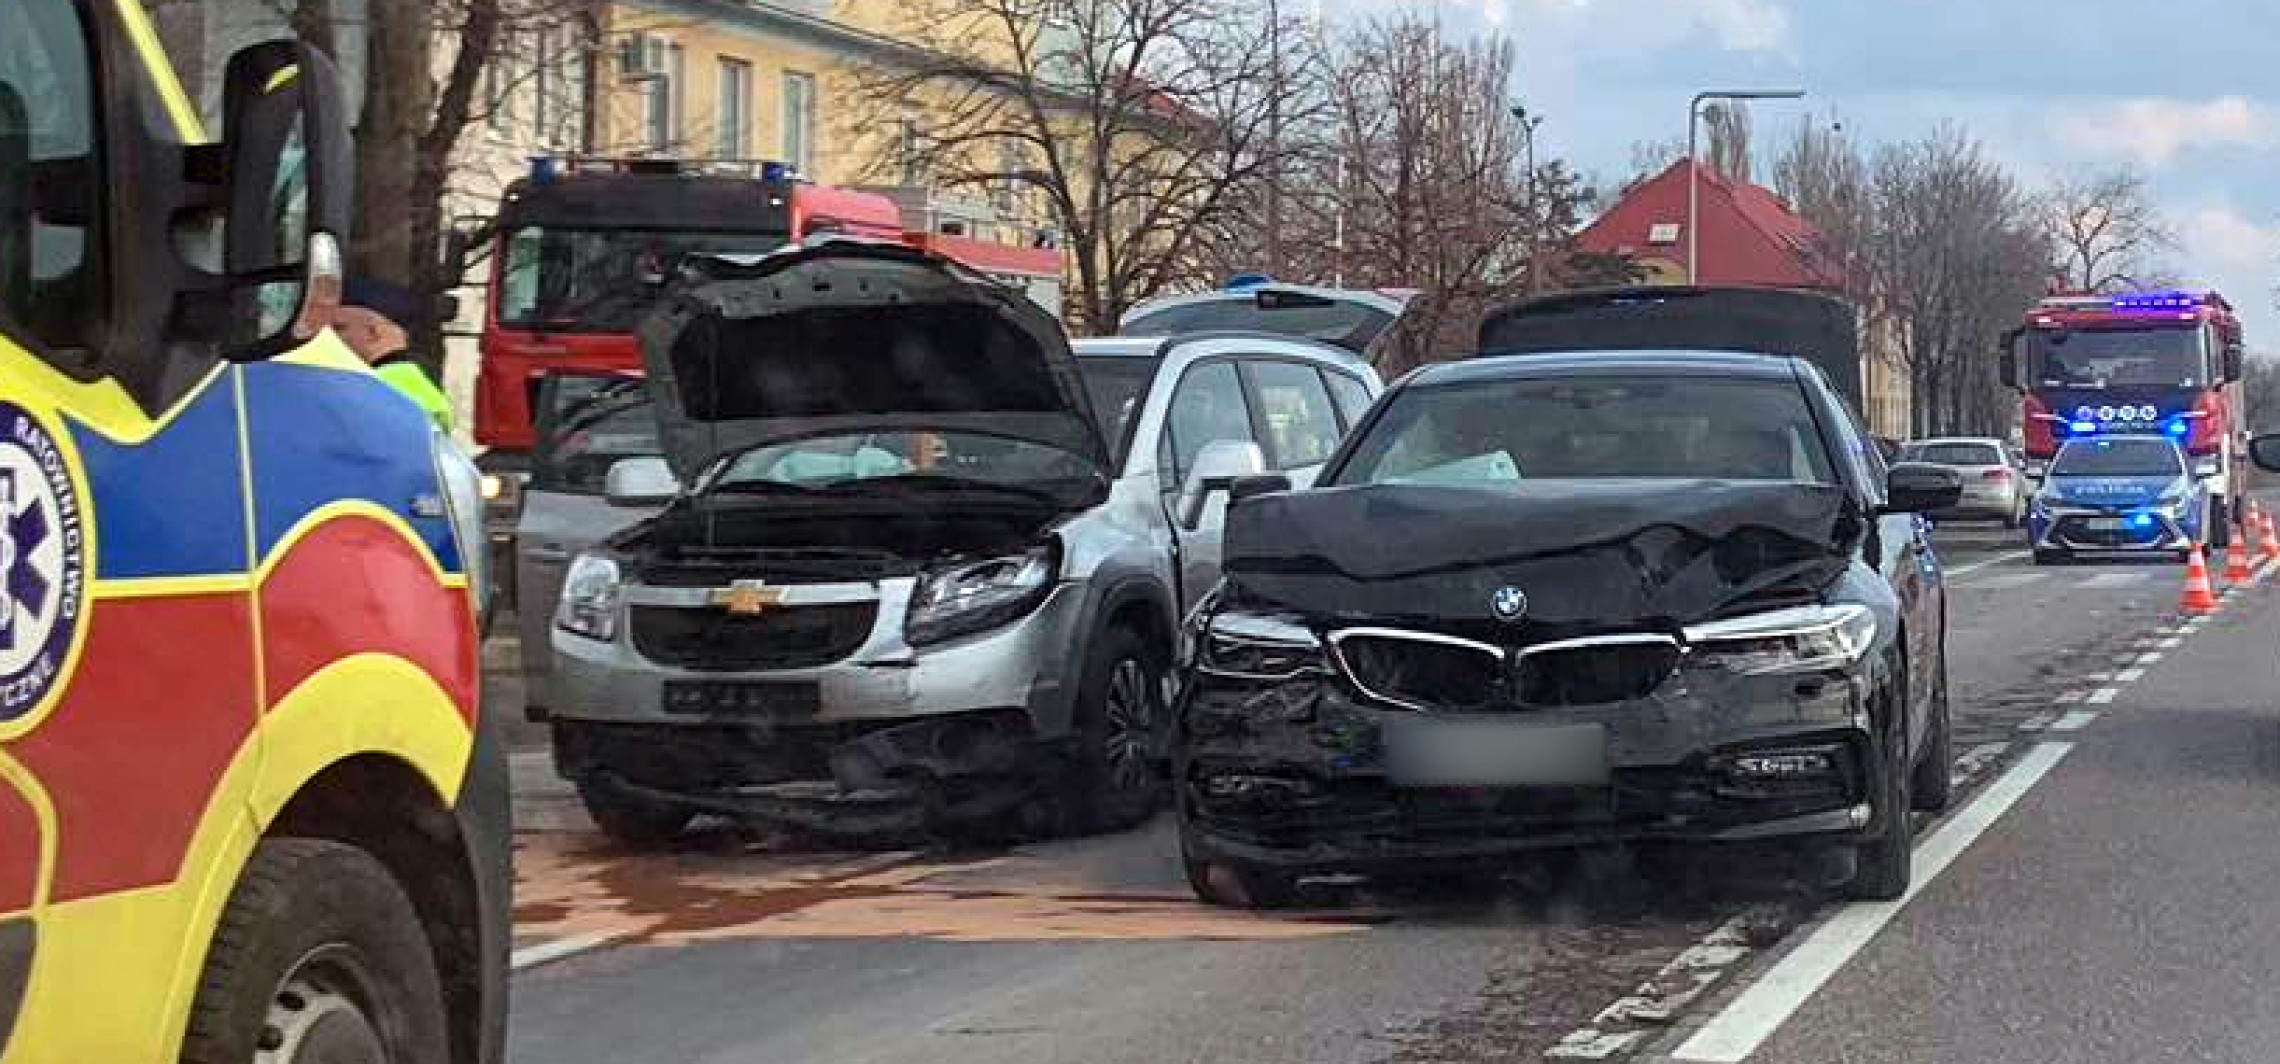 Janikowo - Trzy samochody zderzyły się w Janikowie